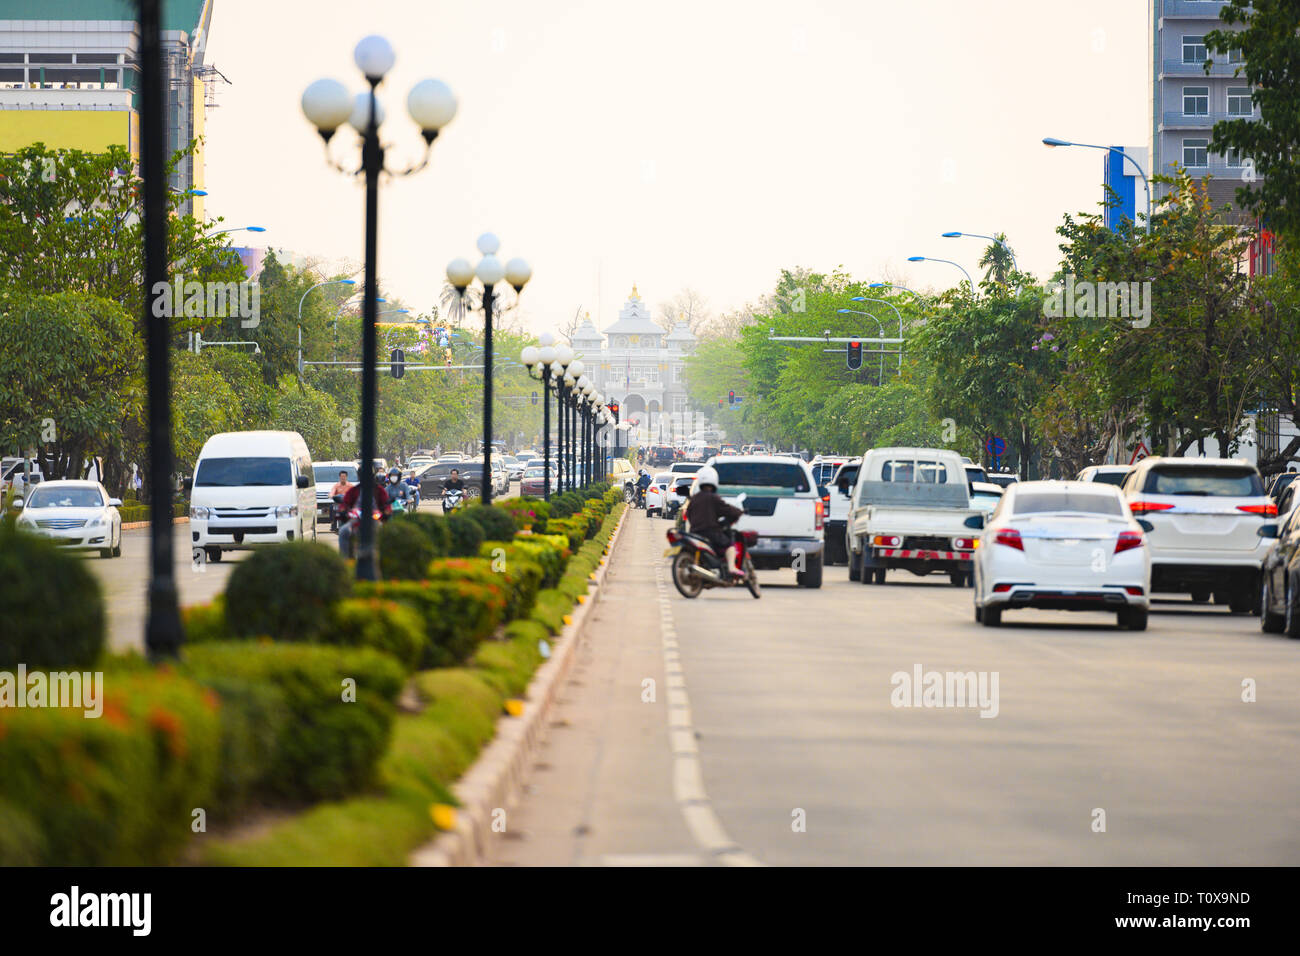 Lokale Datenverkehr bei Sonnenuntergang auf den geschäftigen Straßen von Vientiane, Laos. Vientiane ist die Hauptstadt und größte Stadt von Laos. Stockfoto